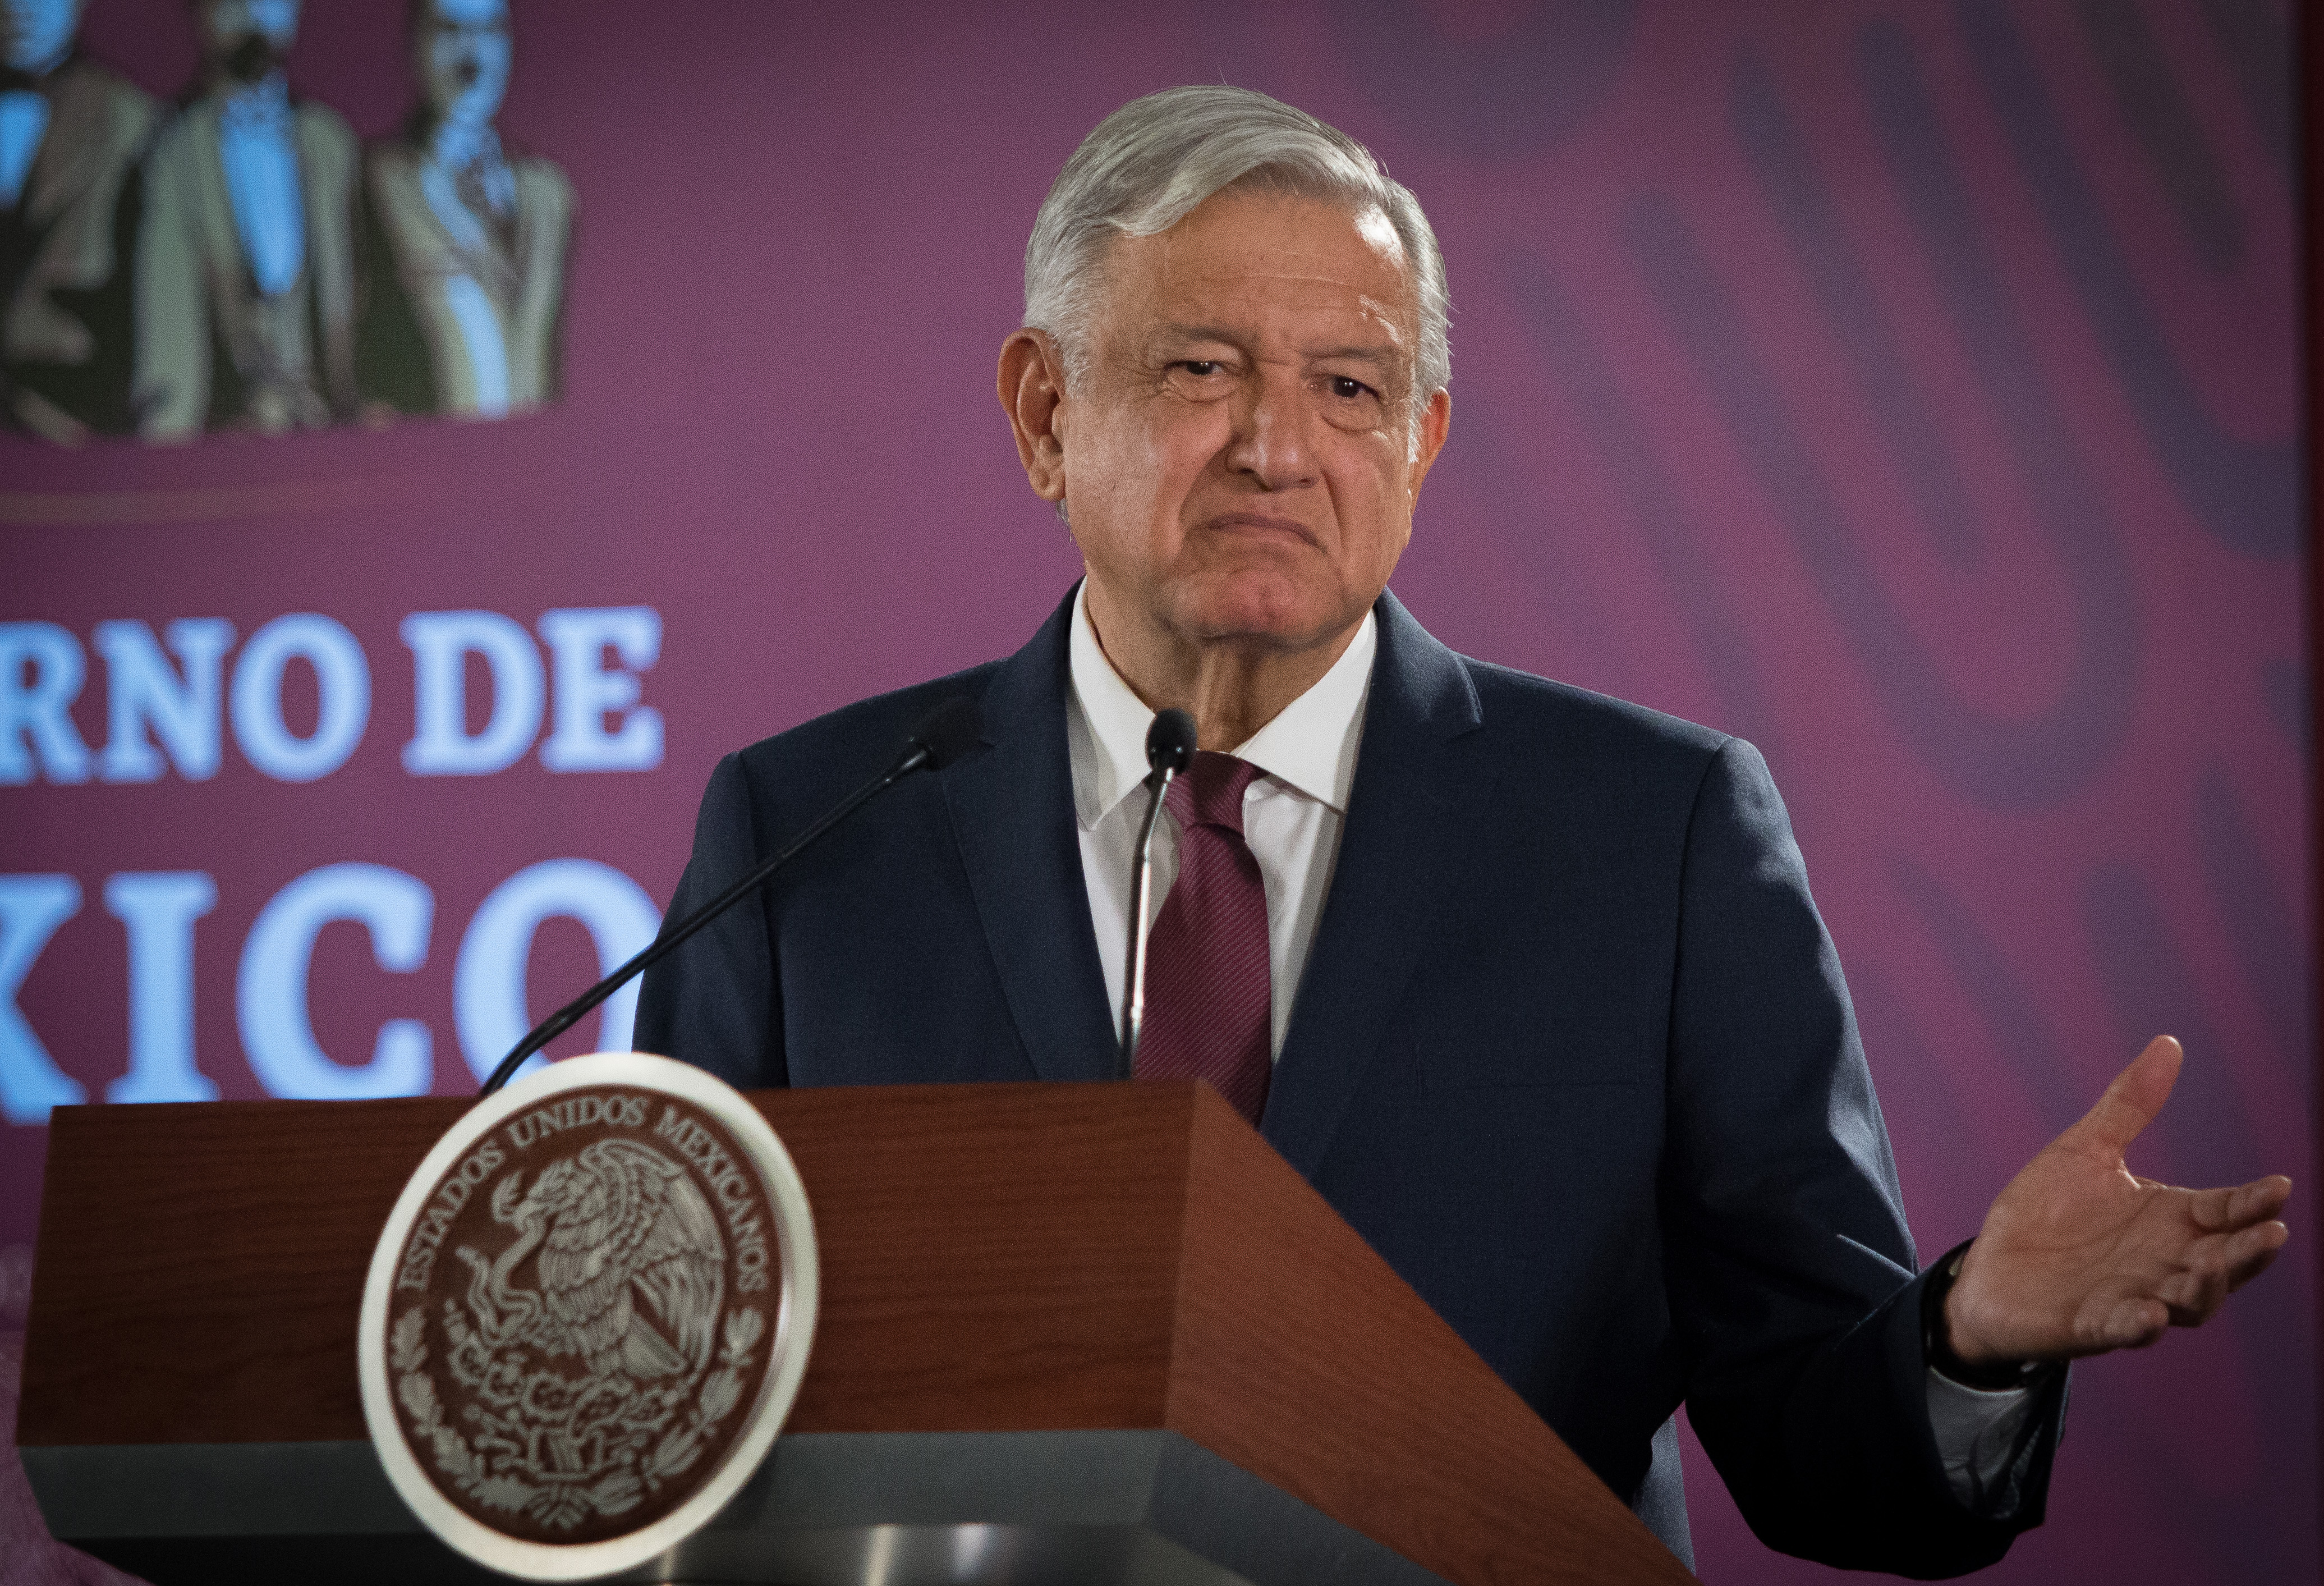 El presidente López Obrador, los aranceles y más en México y el mundo en números